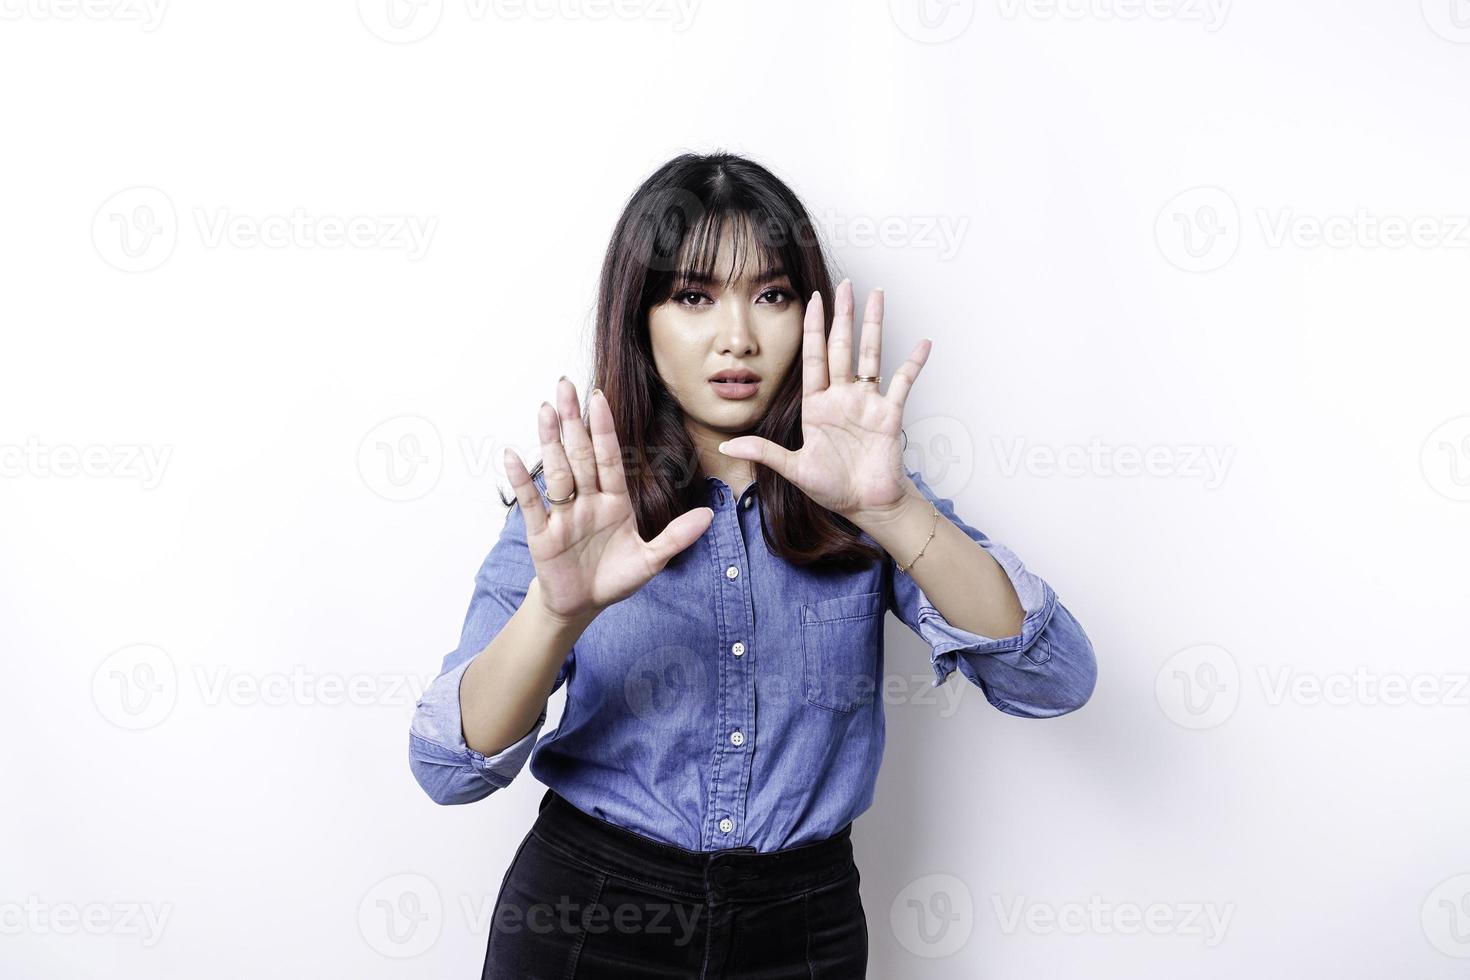 jovem mulher asiática isolada no fundo branco, parece deprimida, rosto coberto por dedos assustados e nervosos. foto